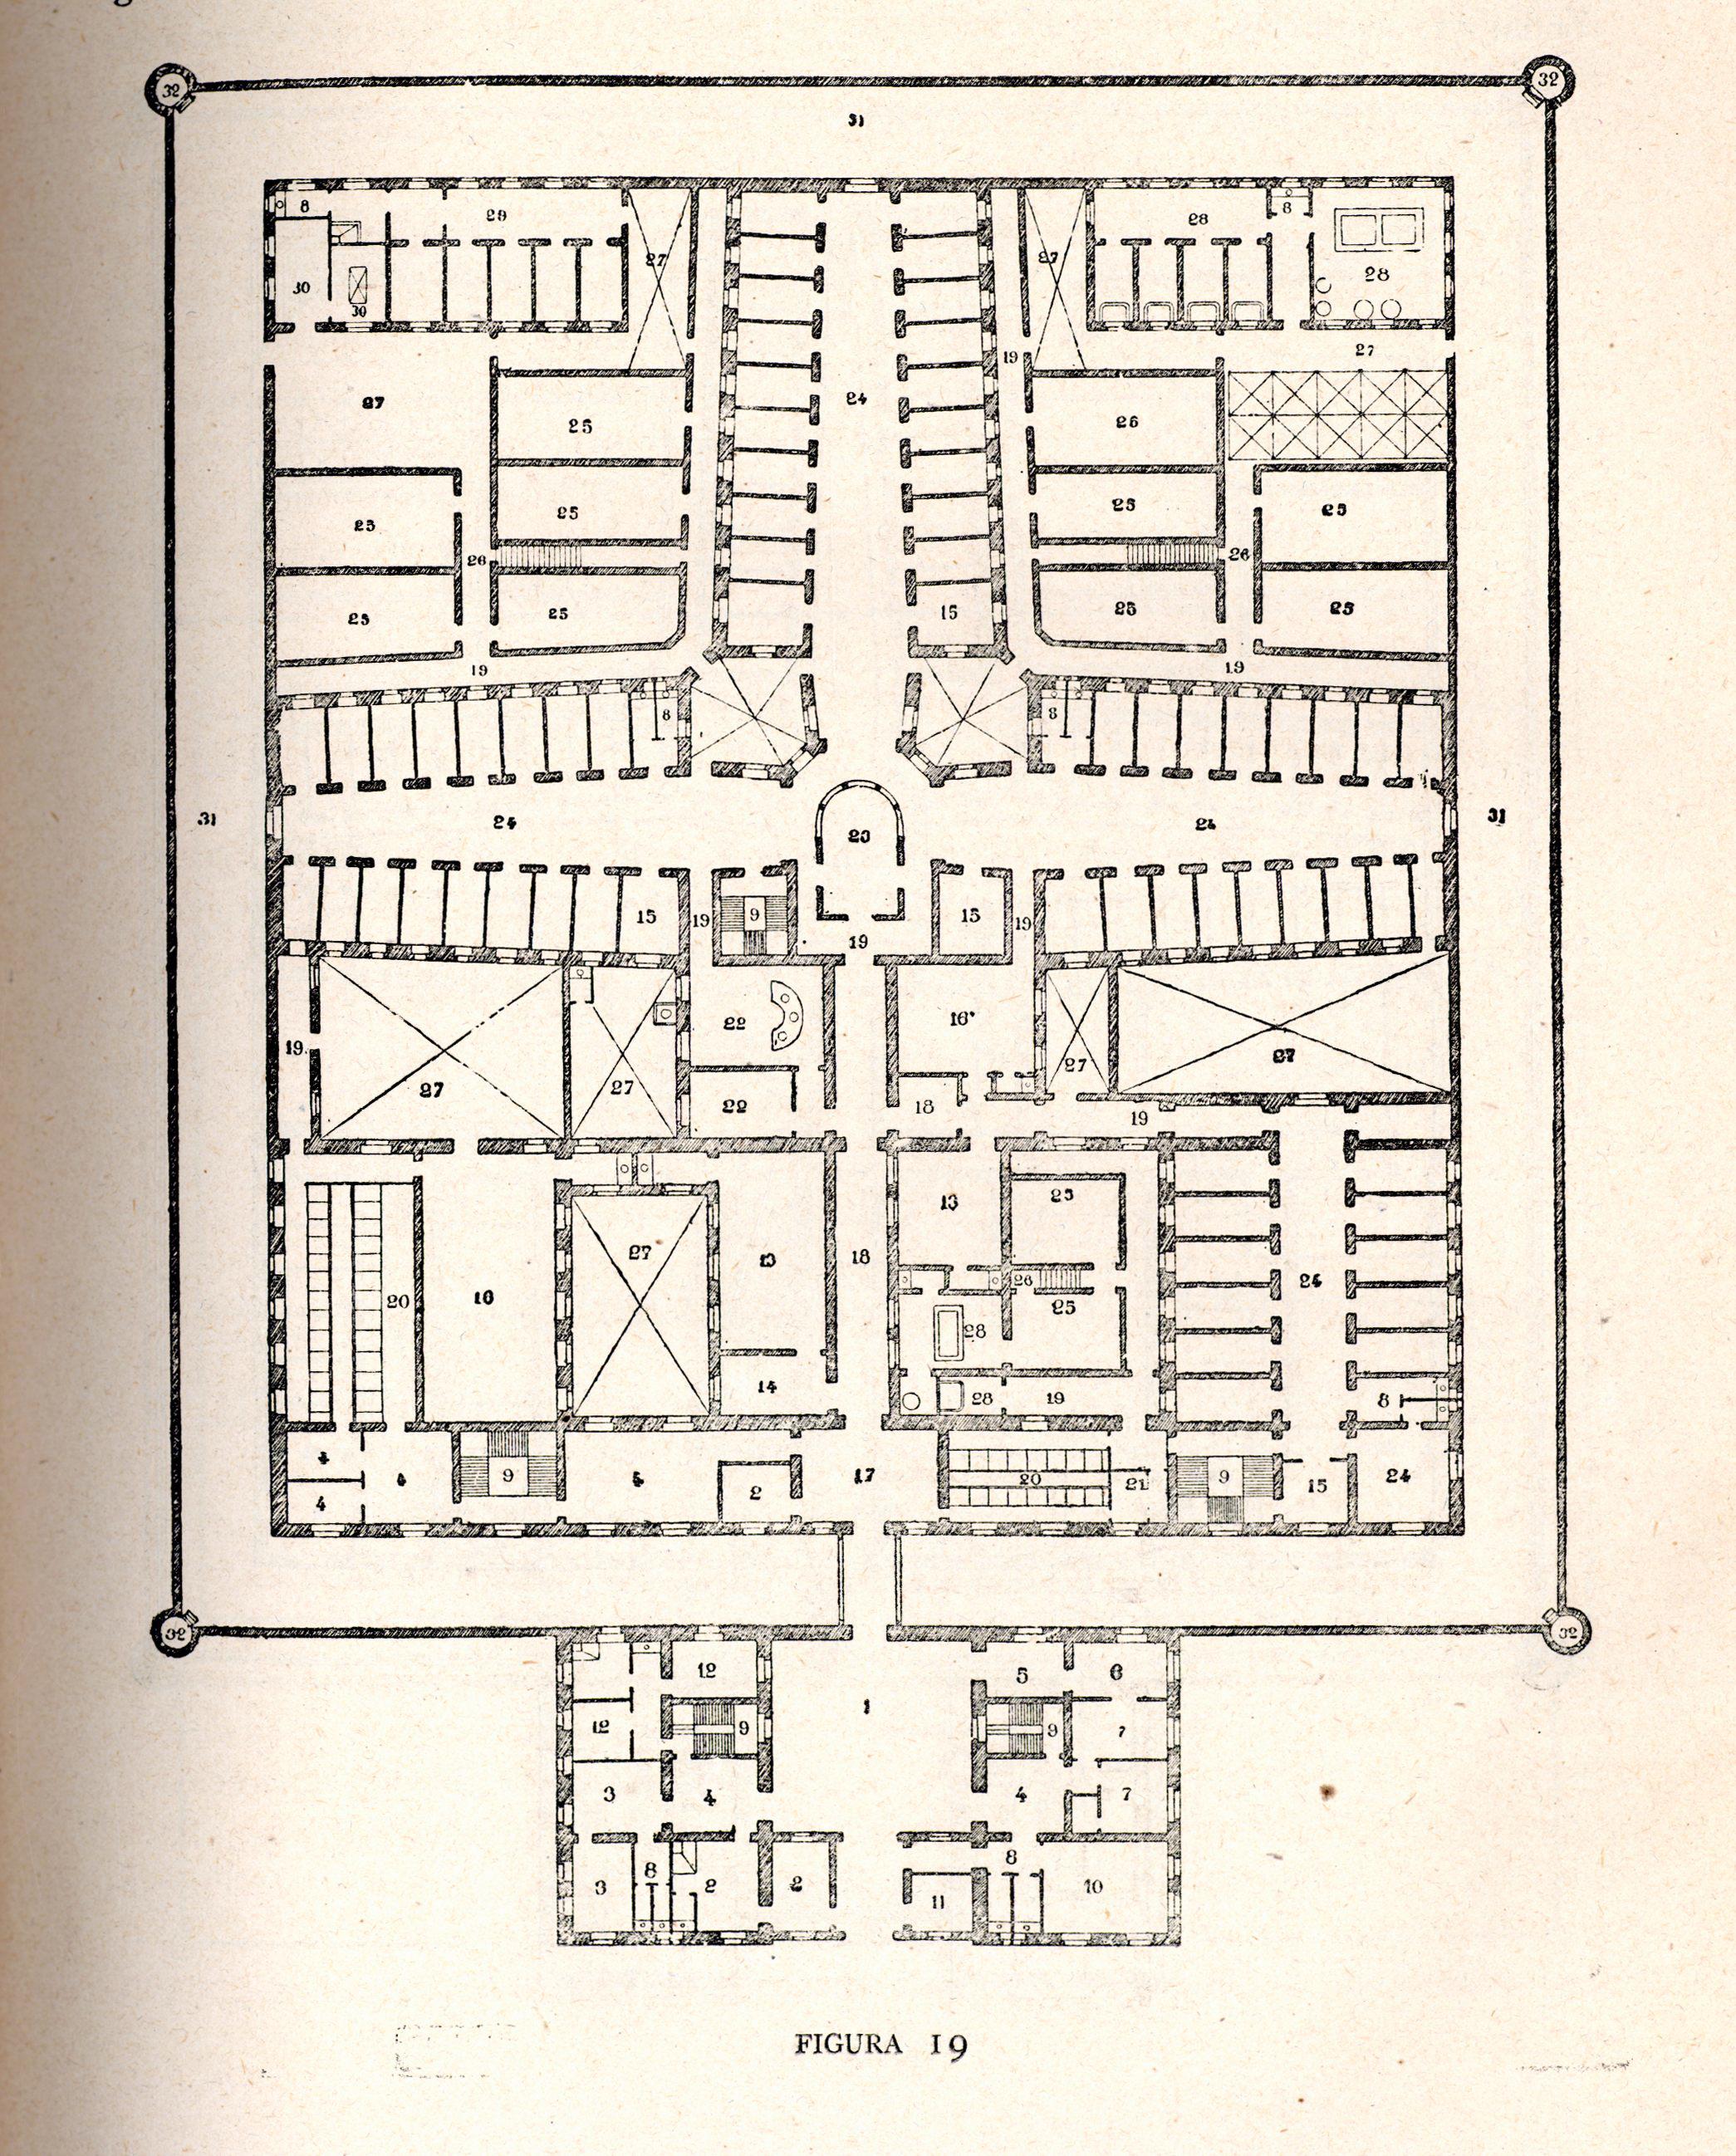 Modelos de Tomás Aranguren para una cárcel de 100 celdas en el Programa para la construcción de cárceles de 1877. Anuario penitenciario de 1889